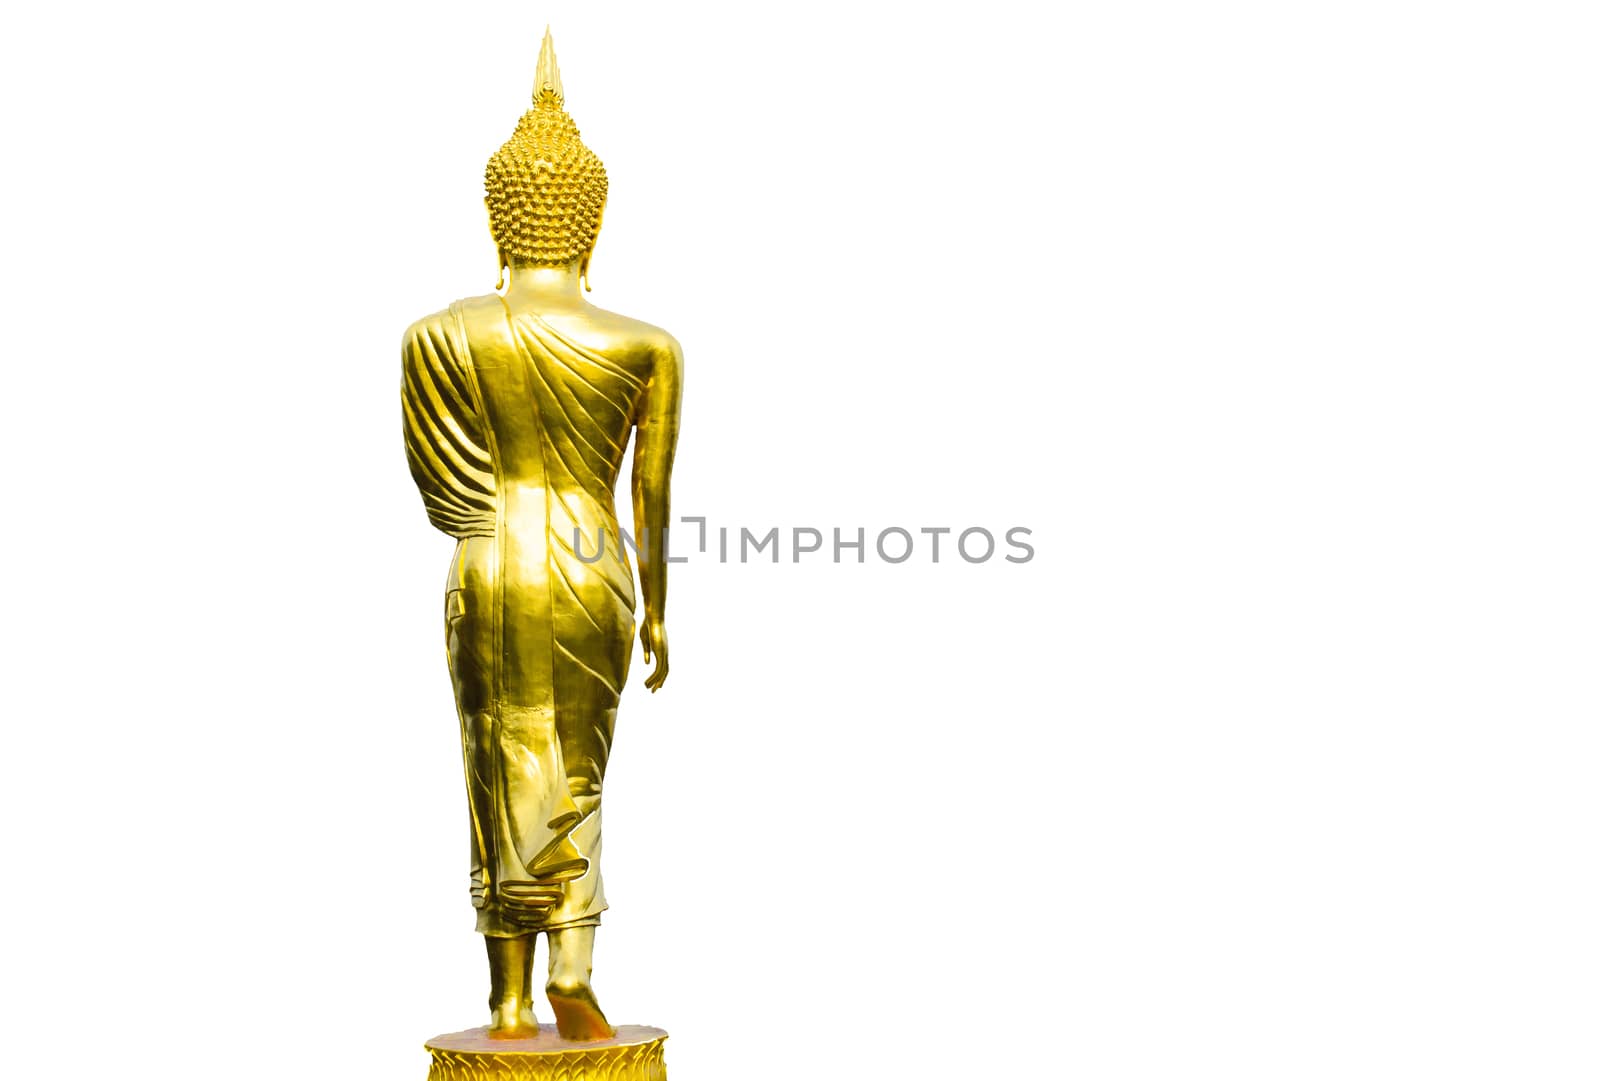 The Buddha Image Art on Isolated White Background